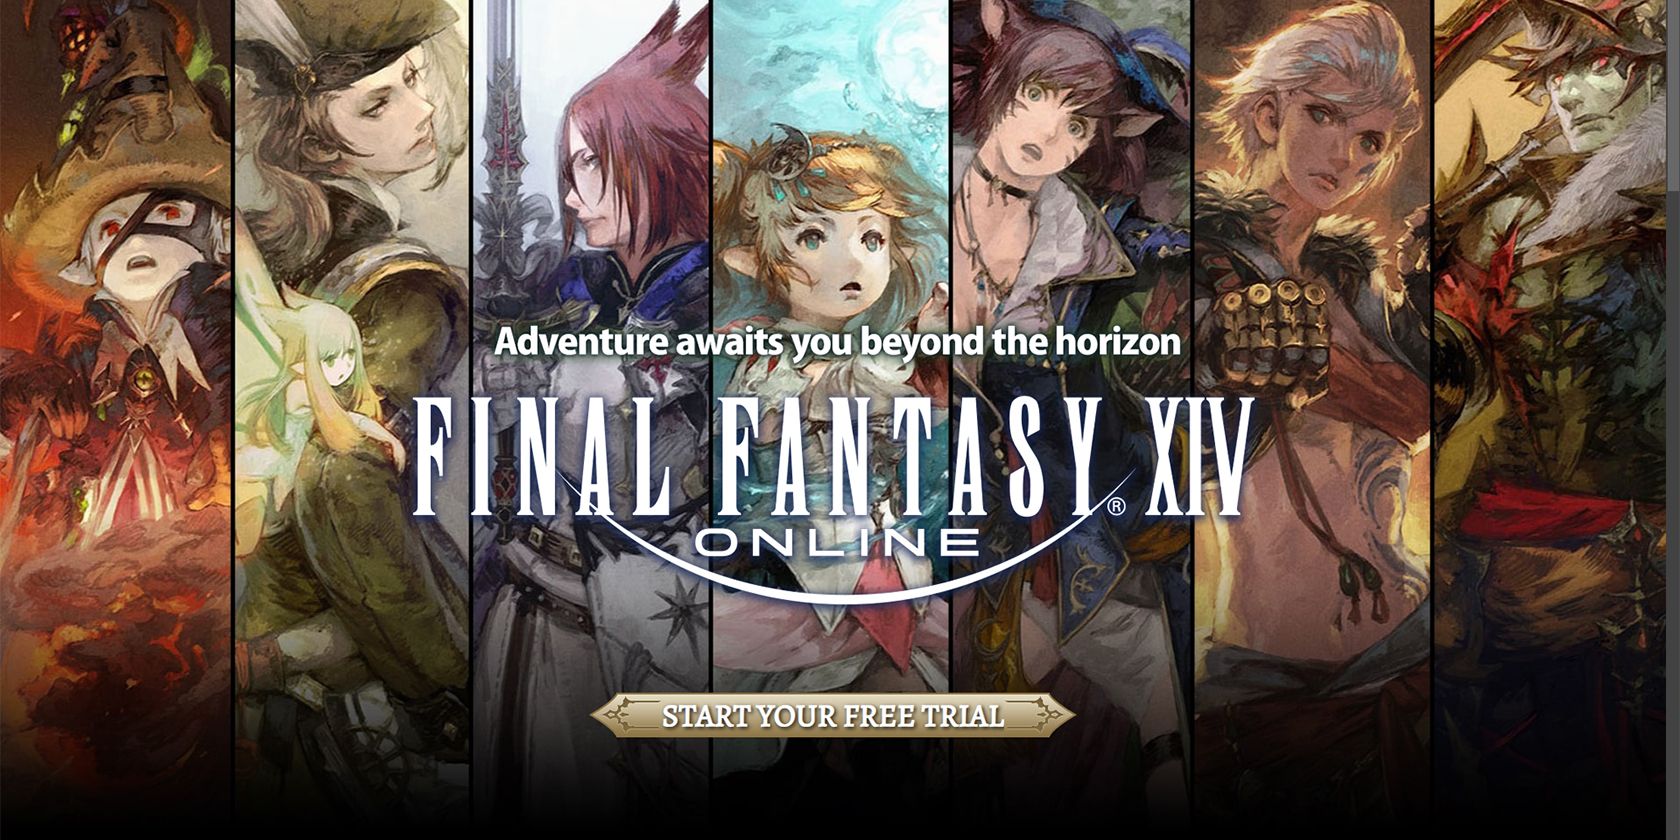 Final Fantasy XIV free trial webpage